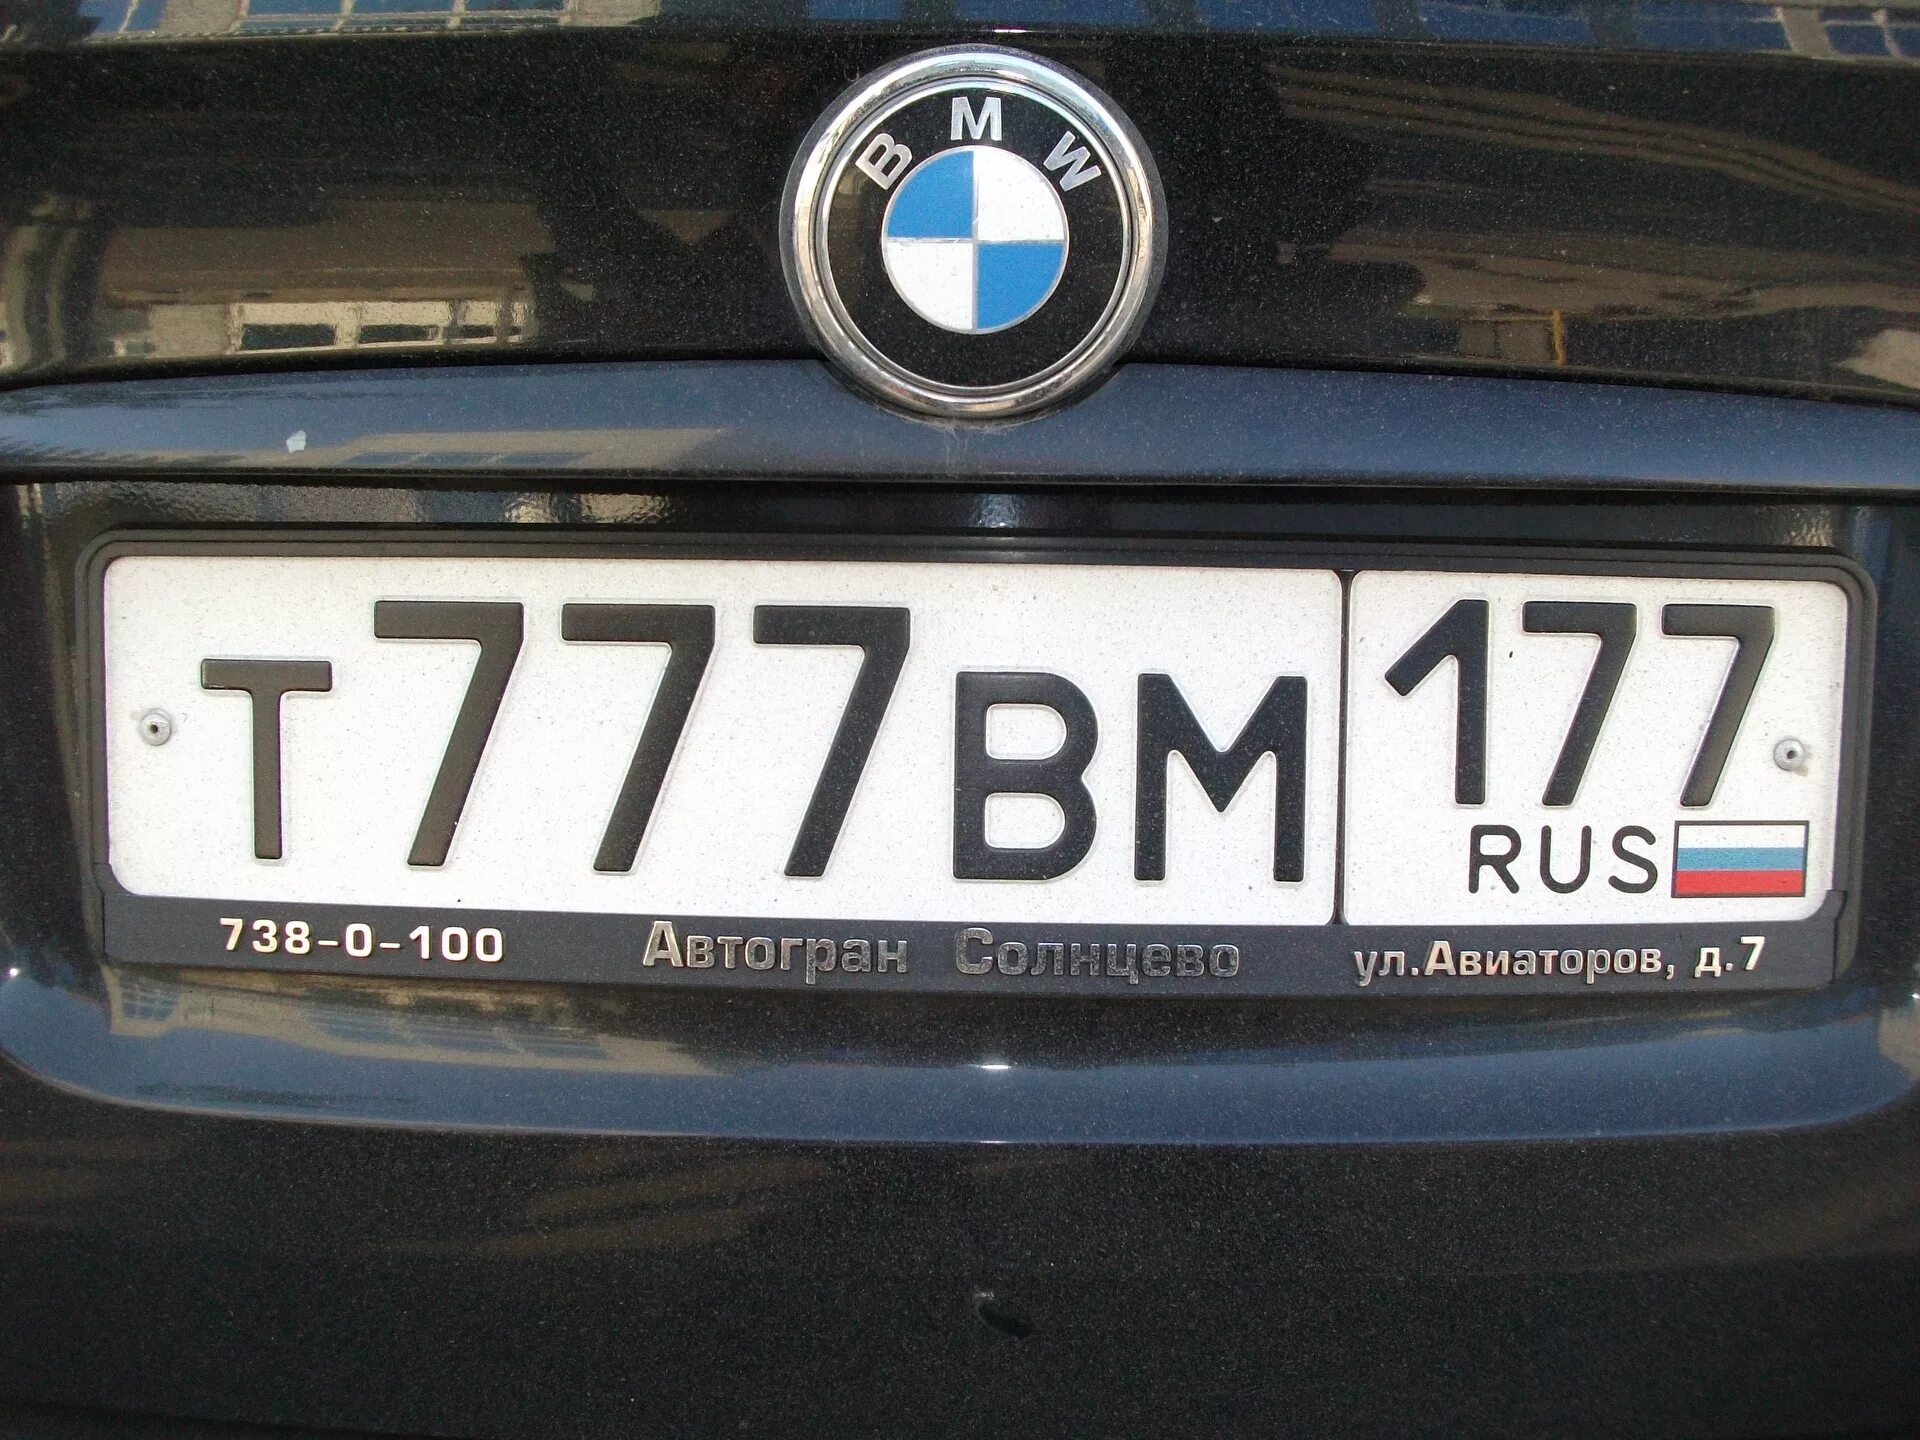 Пародия номера. Номера машин. Номерной знак автомобиля. Российские номера. Российские номера машин.